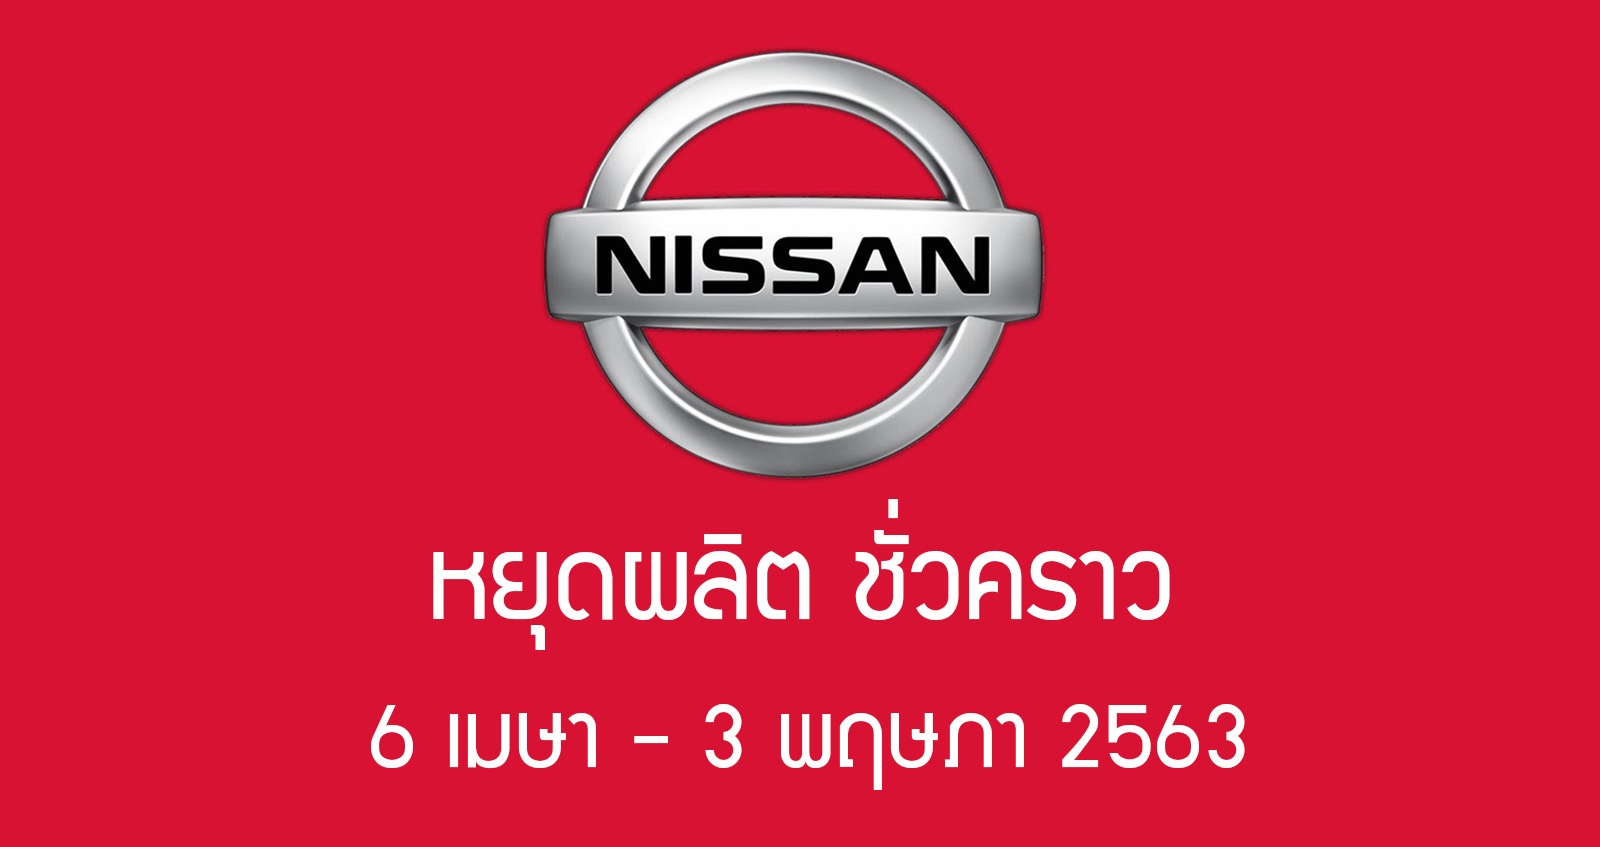 Nissan ประเทศไทย หยุดผลิต 6 เมษา – 3 พฤษภาคม 2563